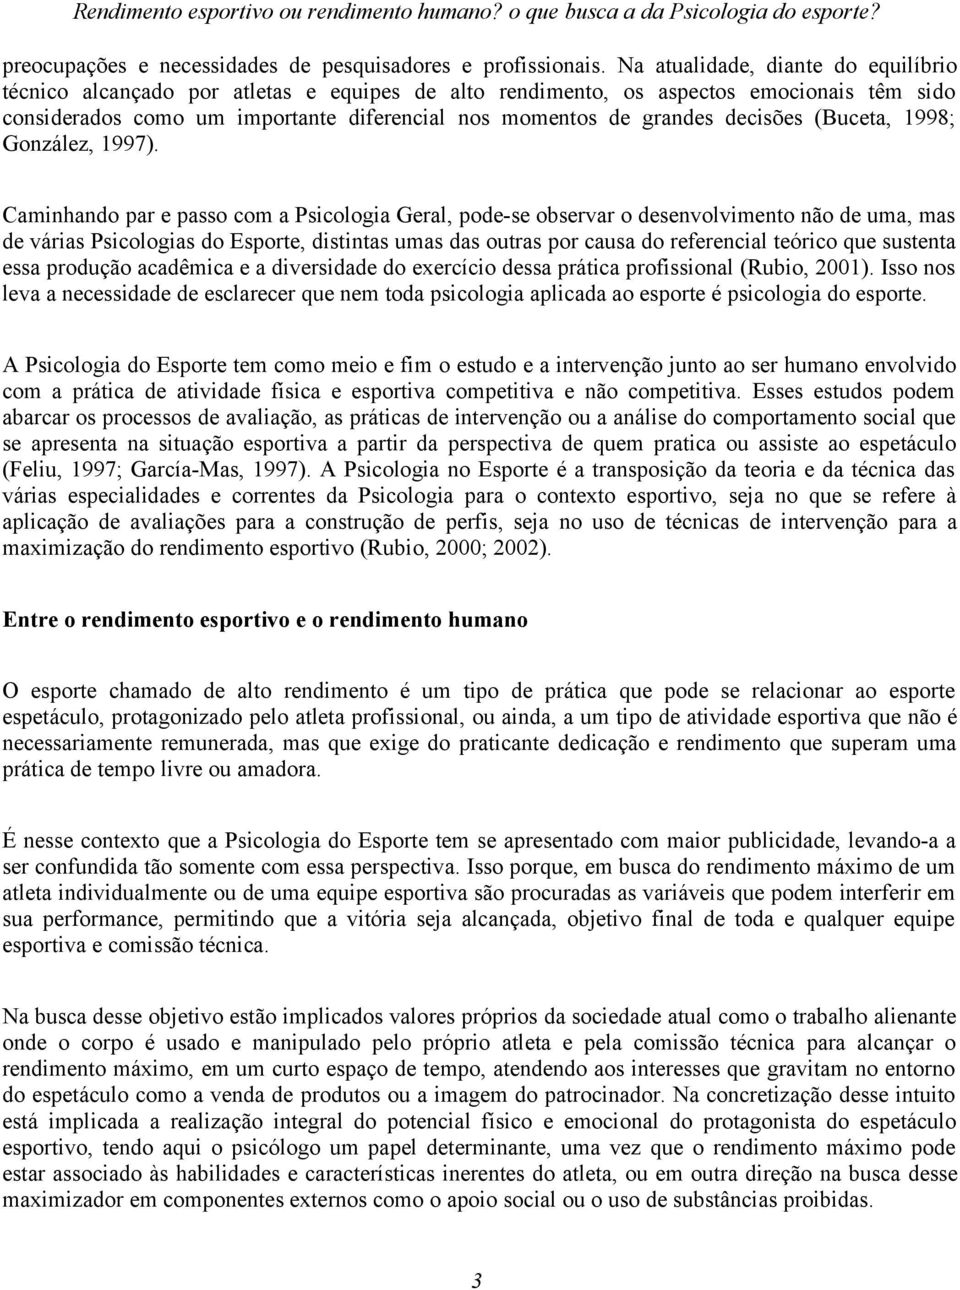 decisões (Buceta, 1998; González, 1997).